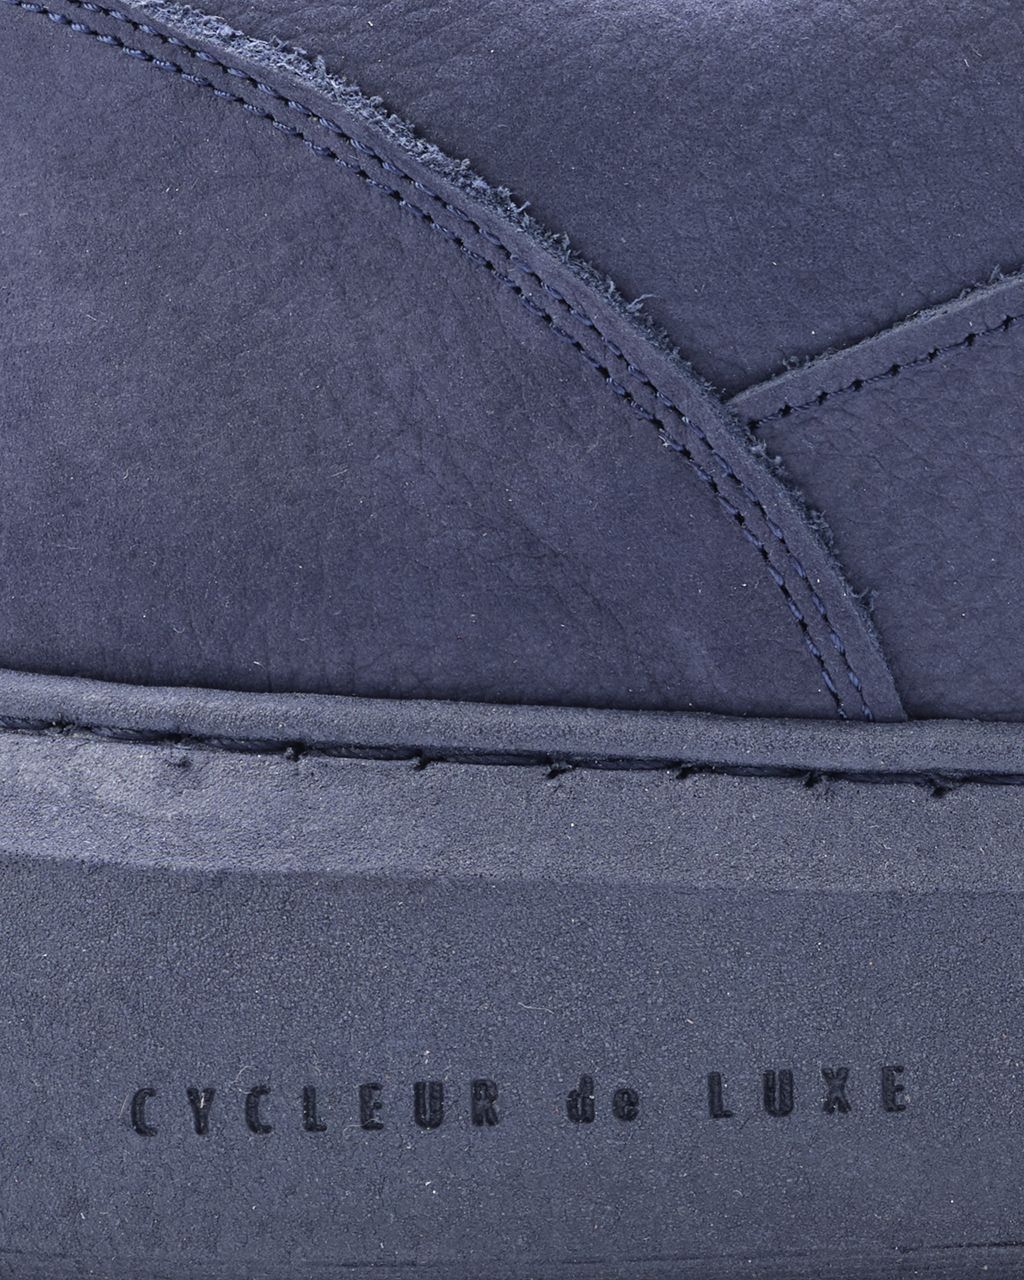 Cycleur de Luxe Roubaix Sneakers Donker blauw 080370-001-40